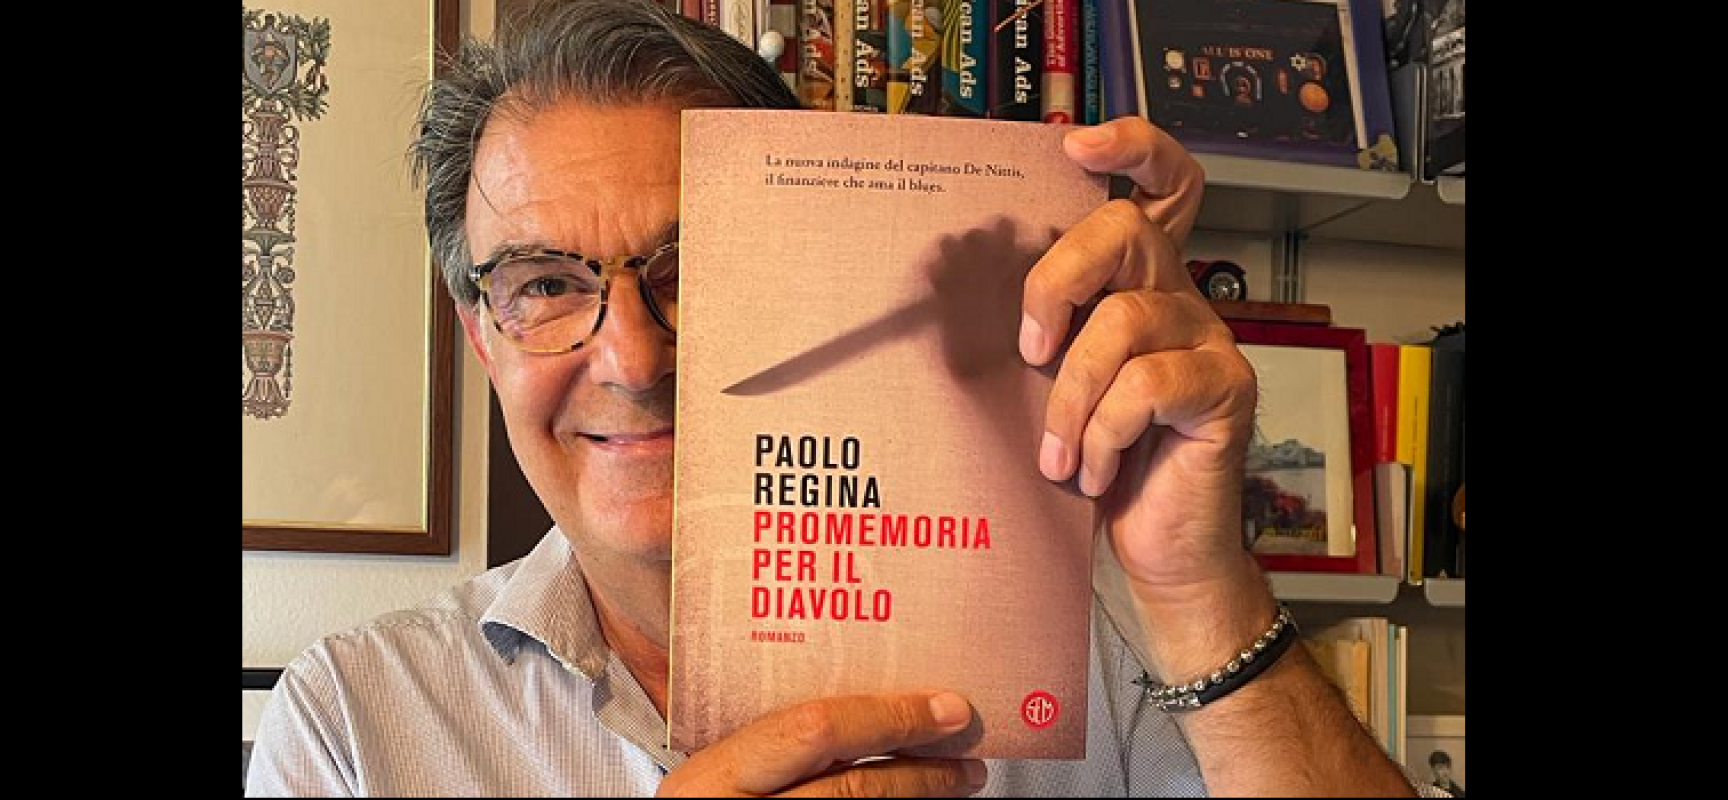 “Prendi un romanzo al chiar di luna”, il giallista Paolo Regina aprirà la terza edizione